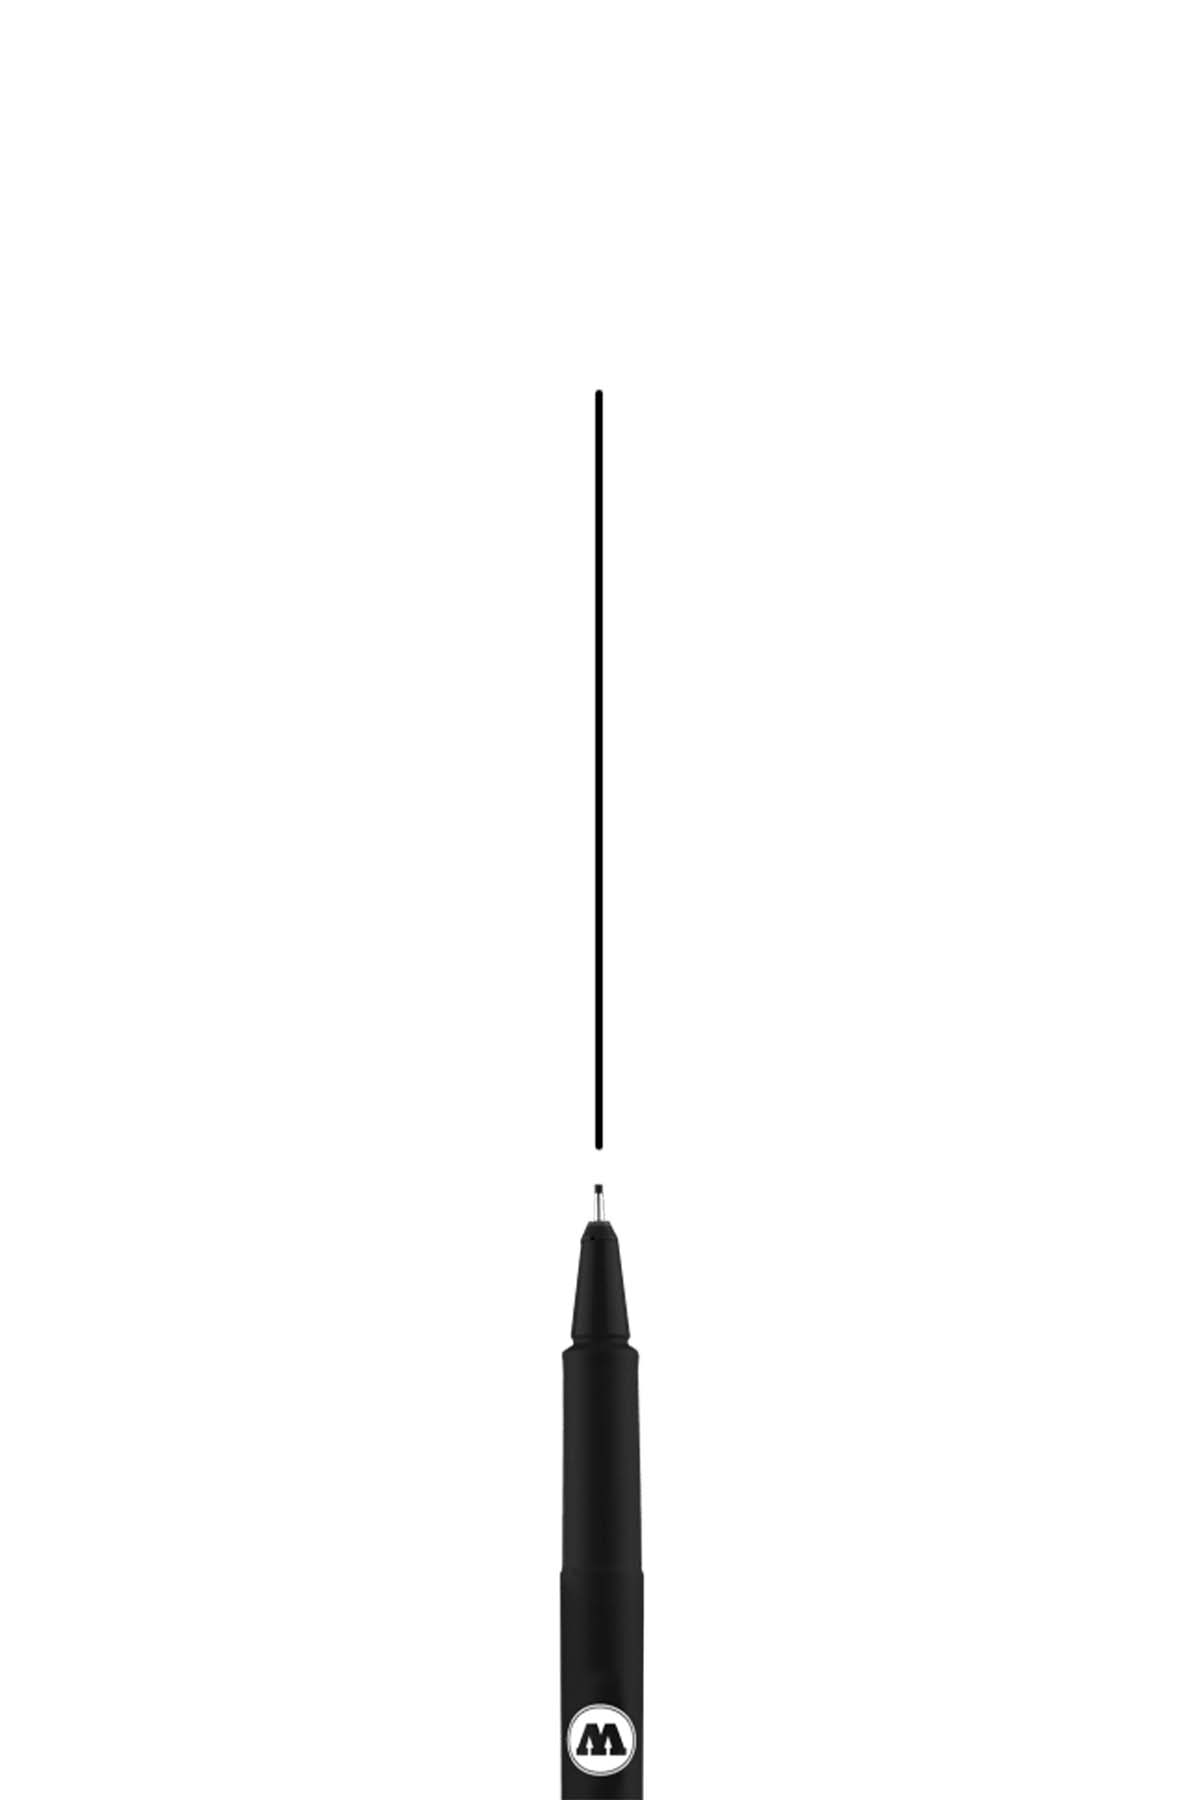 Molotow BLACKLINER Marker 0.7mm